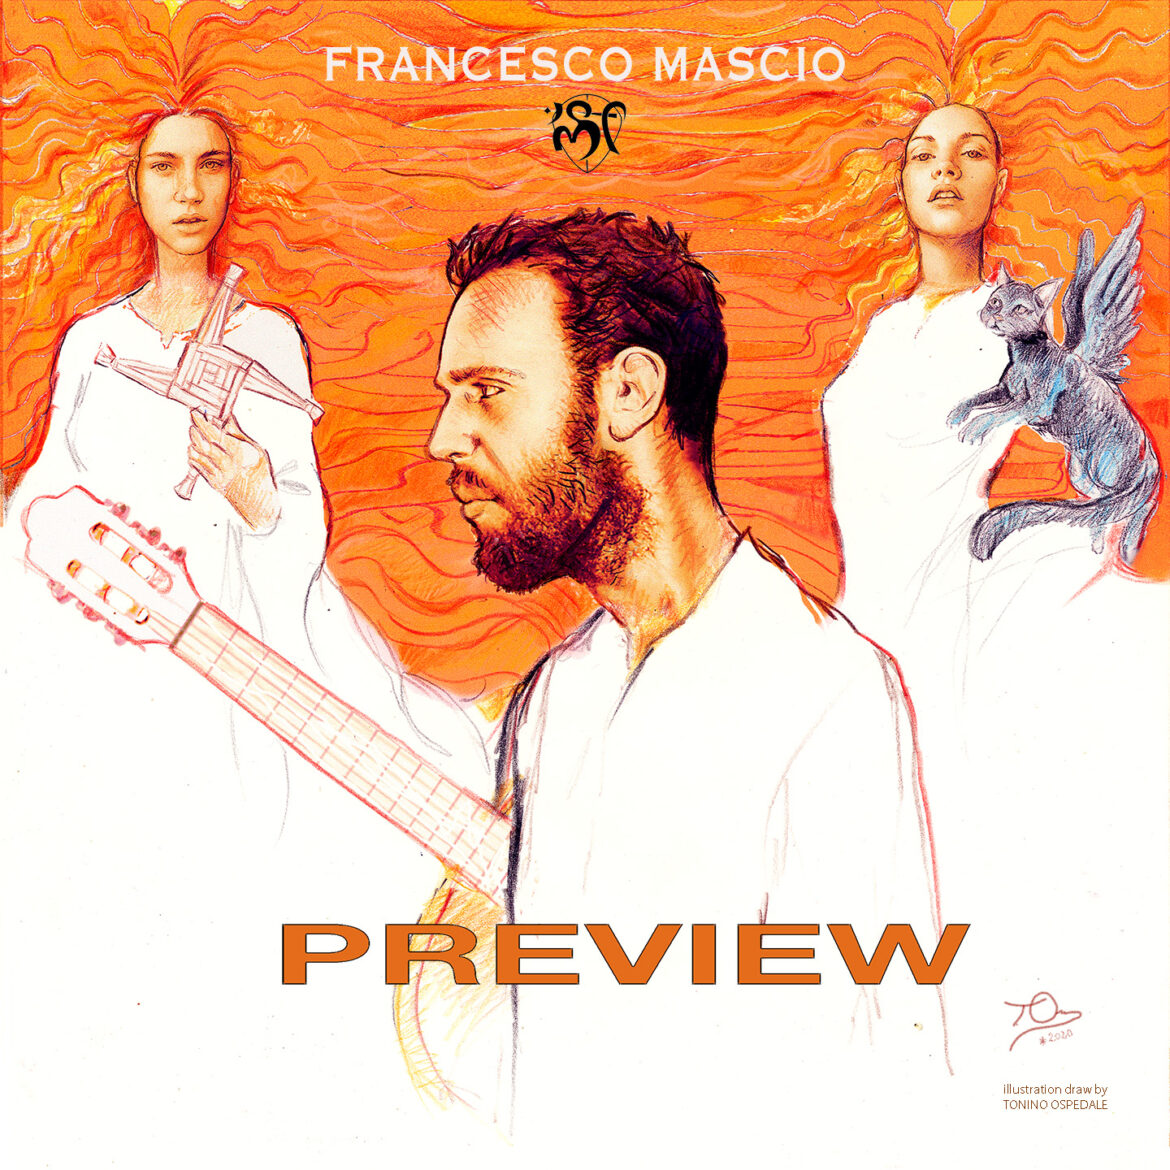 Francesco Mascio pubblica Preview, il nuovo lavoro discografico in streaming